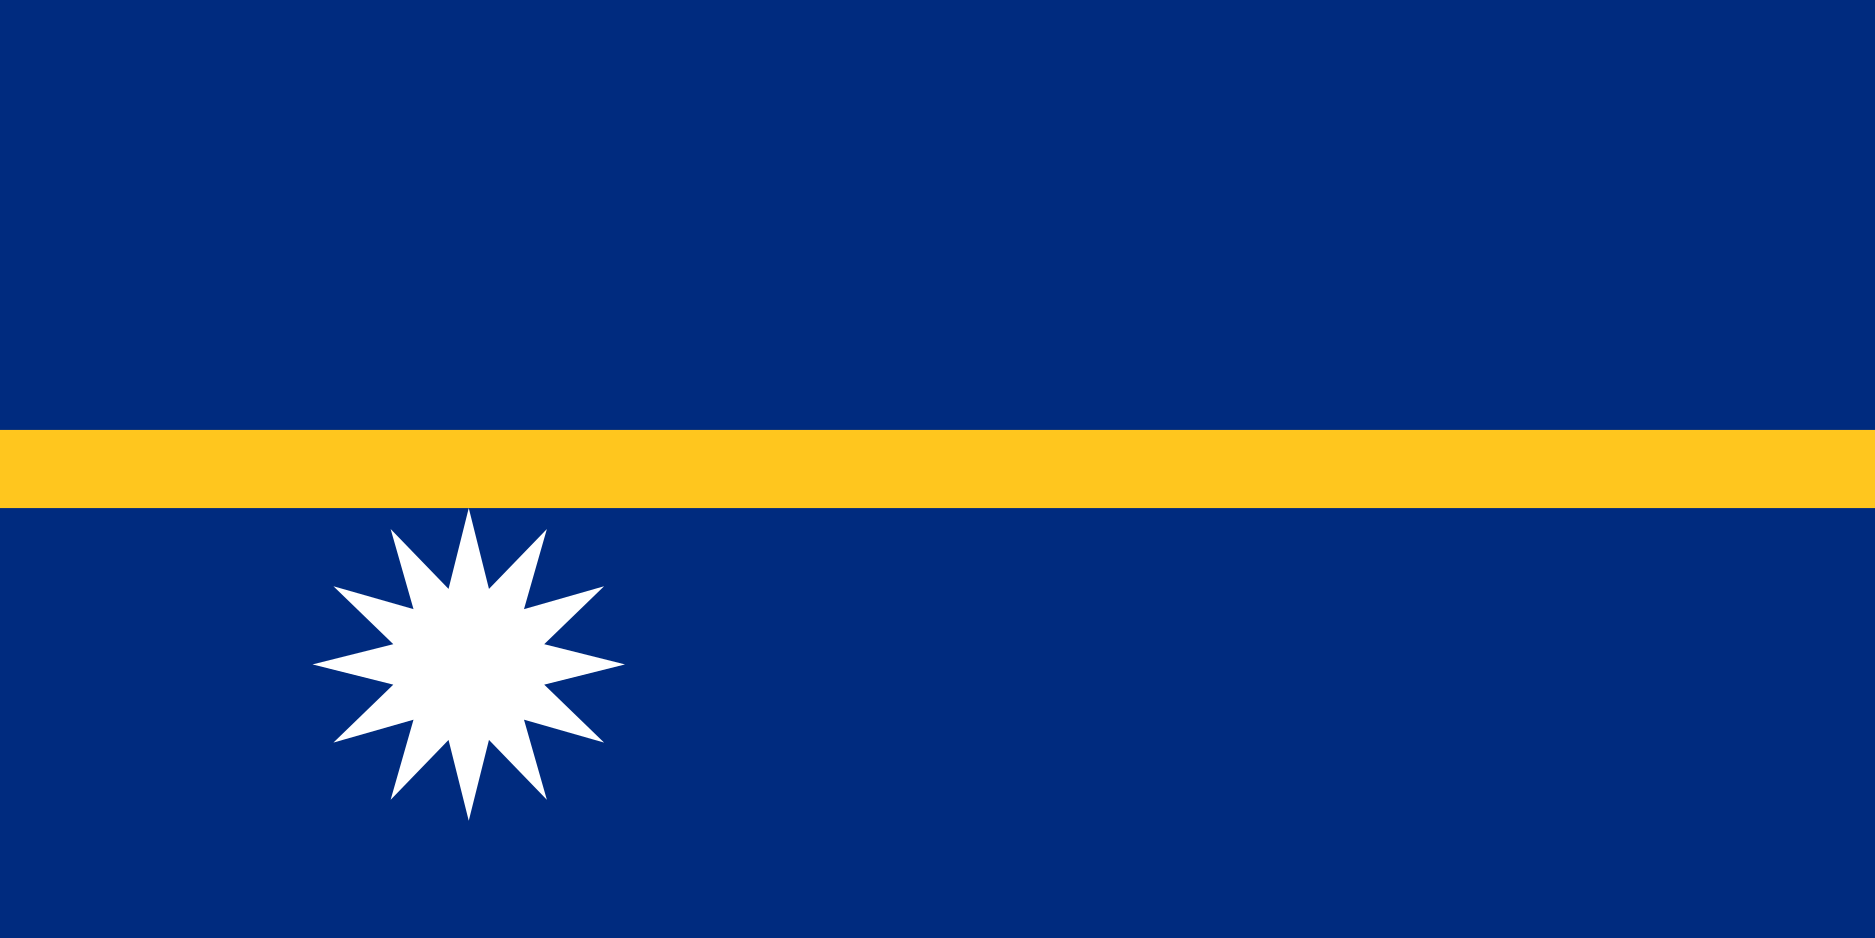 Nauru Flag Image - Free Download